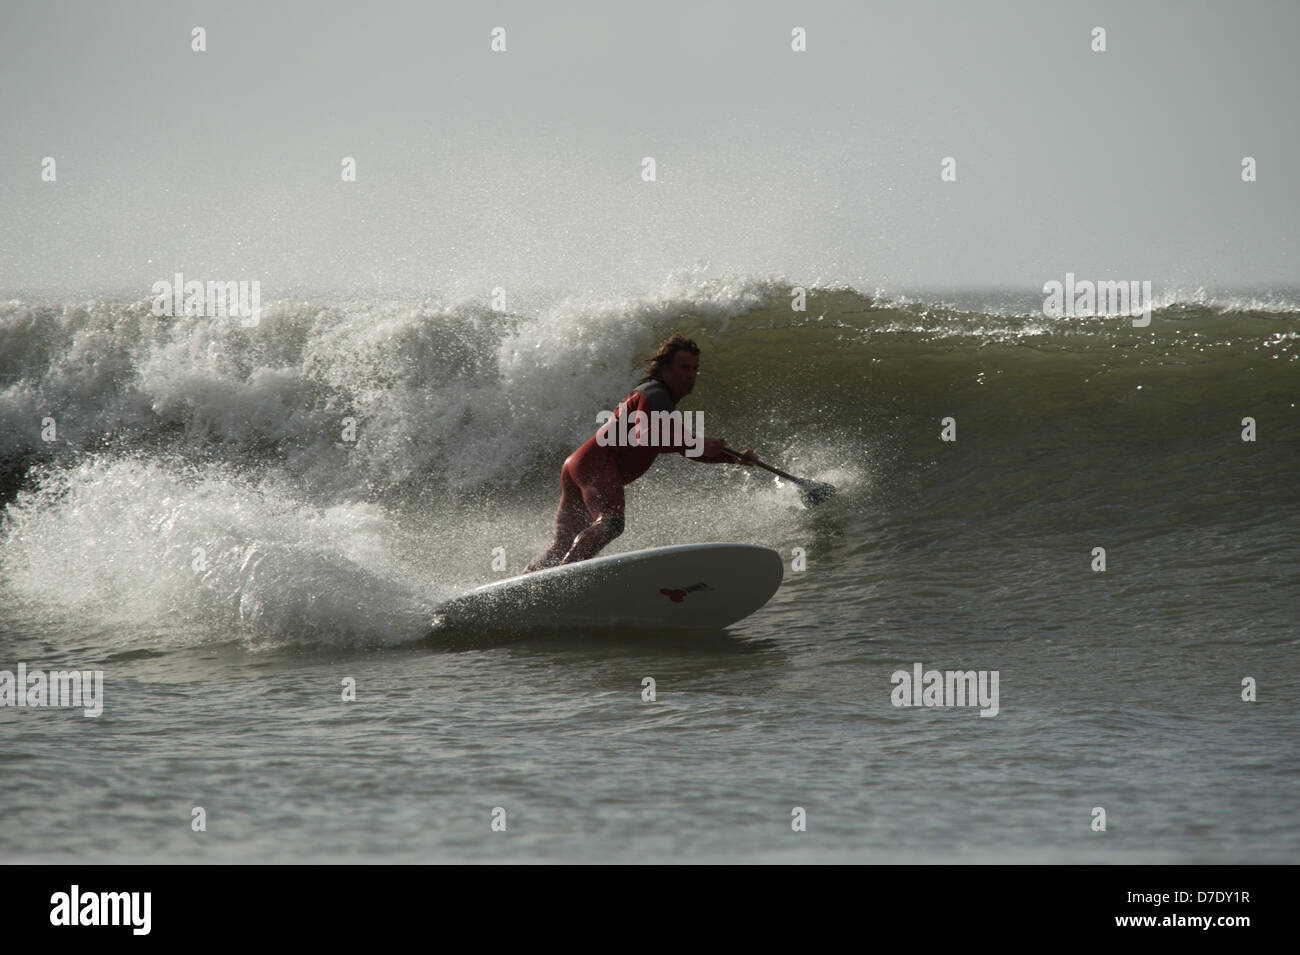 Stand Up Paddle board surfer Chris Griffiths, Champion britannique montre la voie classique de l'autre côté de la vague des surfeurs. Séquence. Gower, UK Banque D'Images